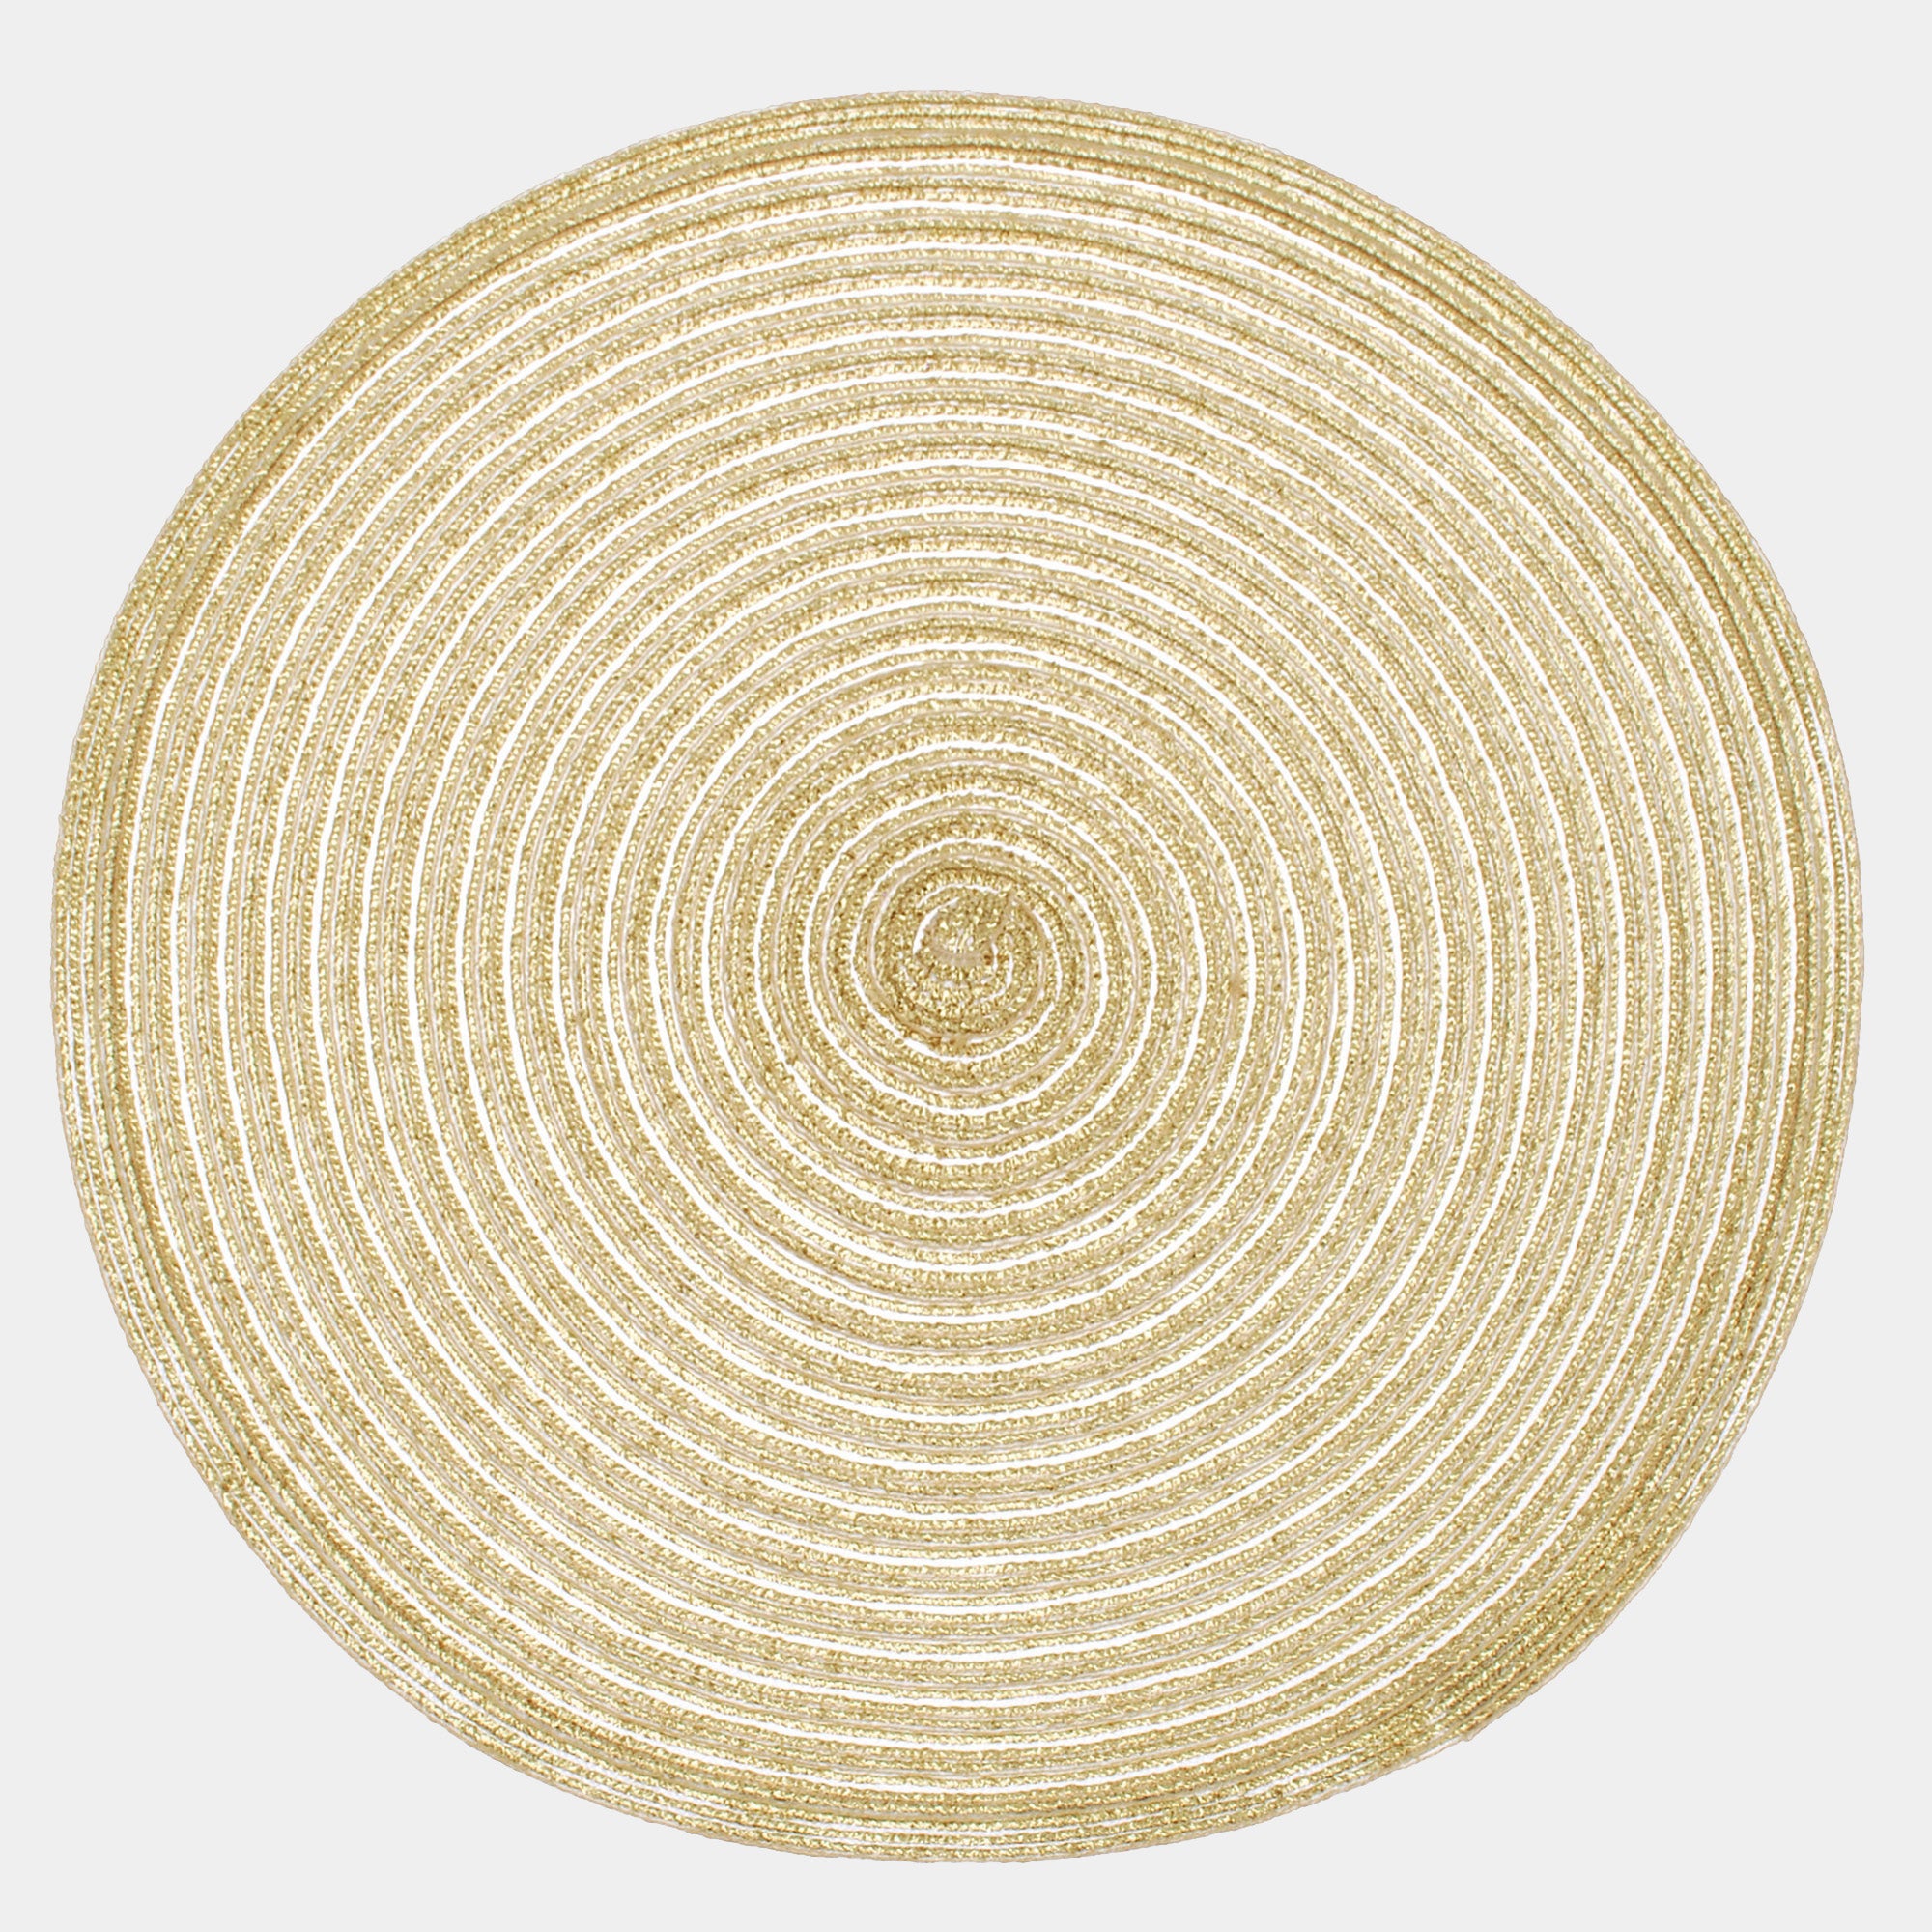 Circular Woven Lurex- Gold Placemat